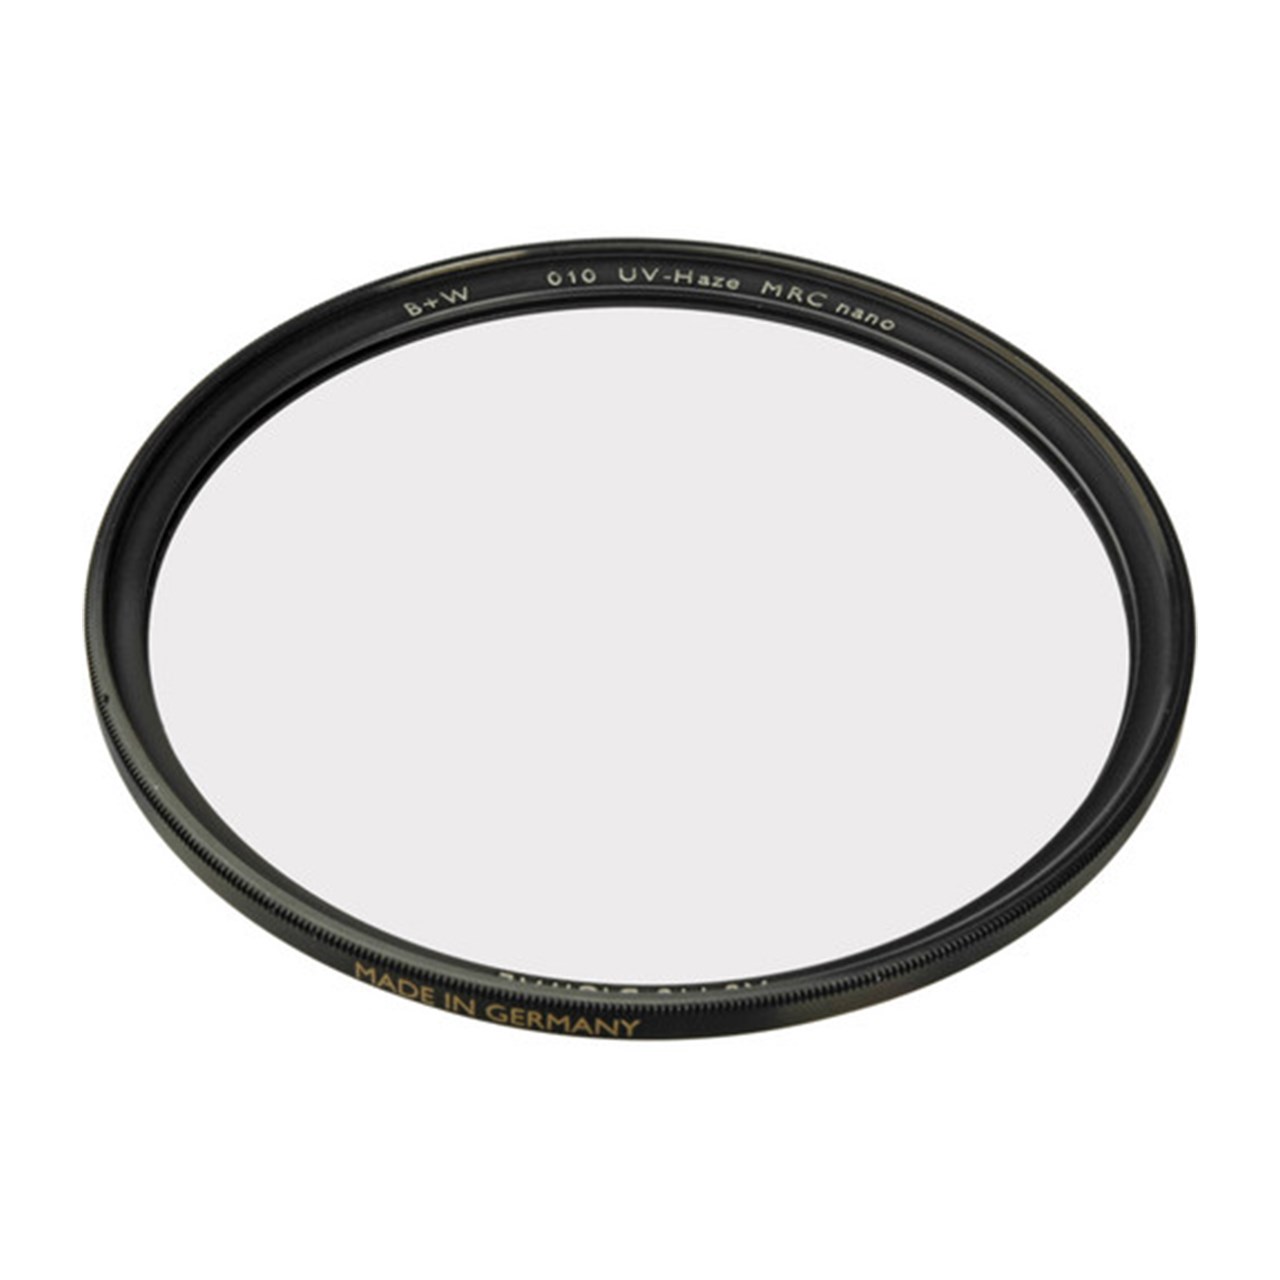 فیلتر لنز بی پلاس دبلیو مدل XS-Pro UV Haze MRC-Nano SC 010 82mm